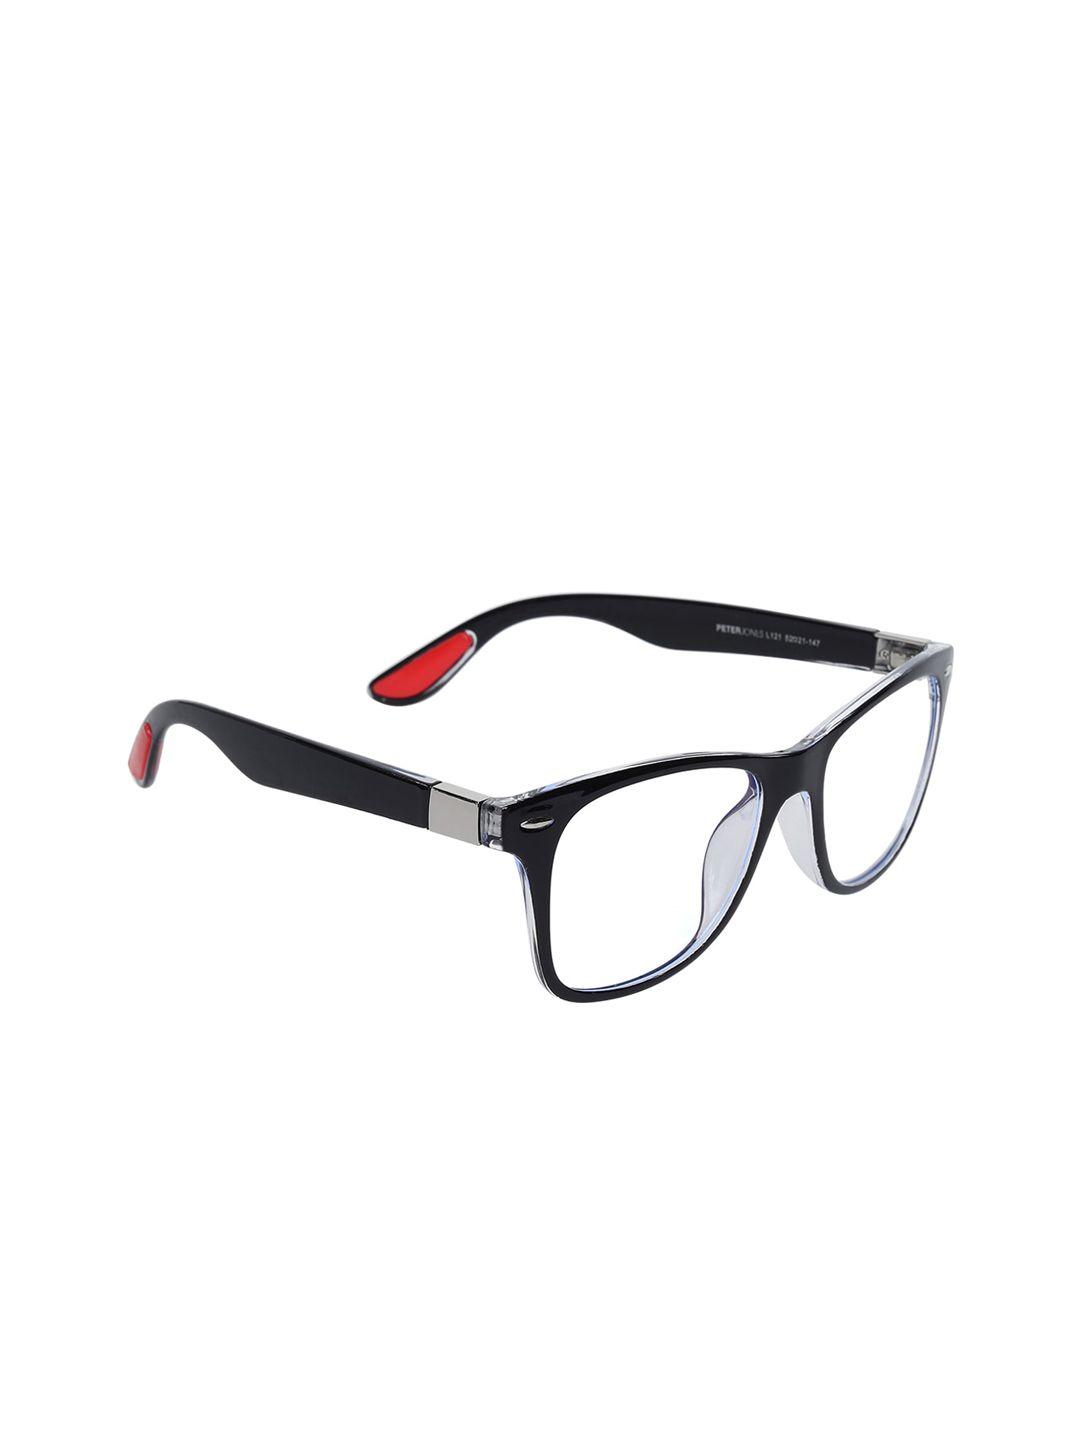 peter jones eyewear unisex solid uv 400, ag030 light blocking full rim optical rectangle frames